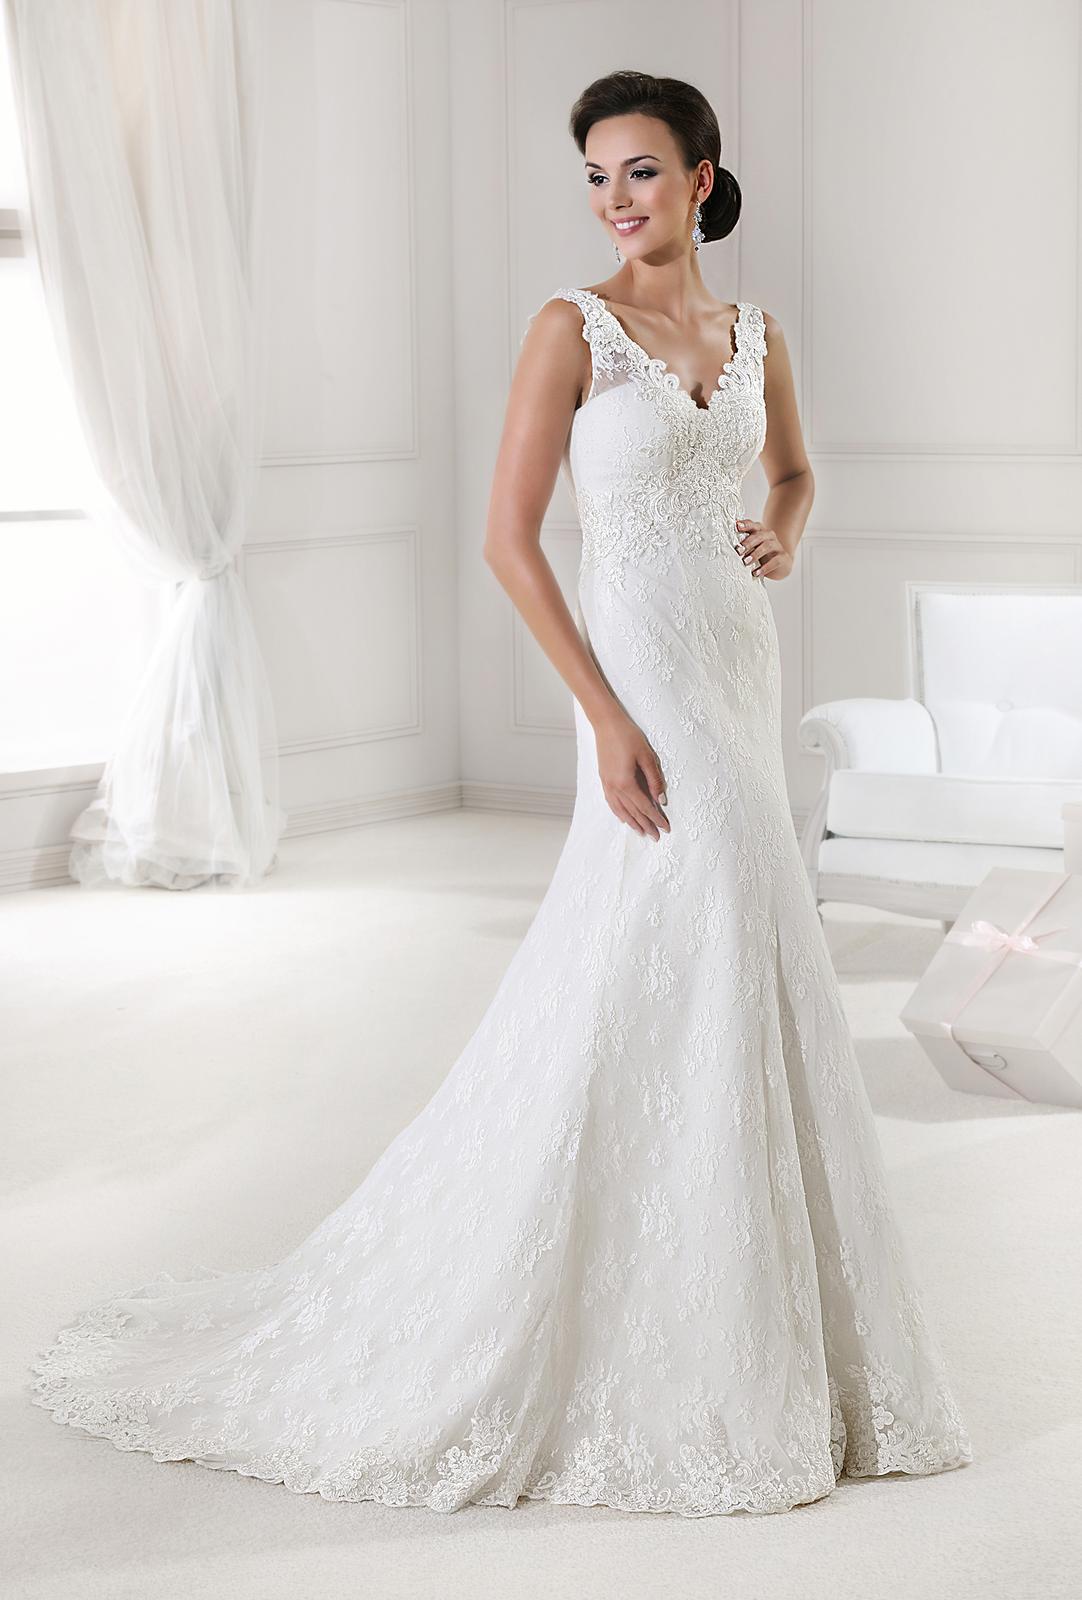 svatbyzbraslav - Agnes 11820 Výprodej svatební šaty cena 6.500Kč